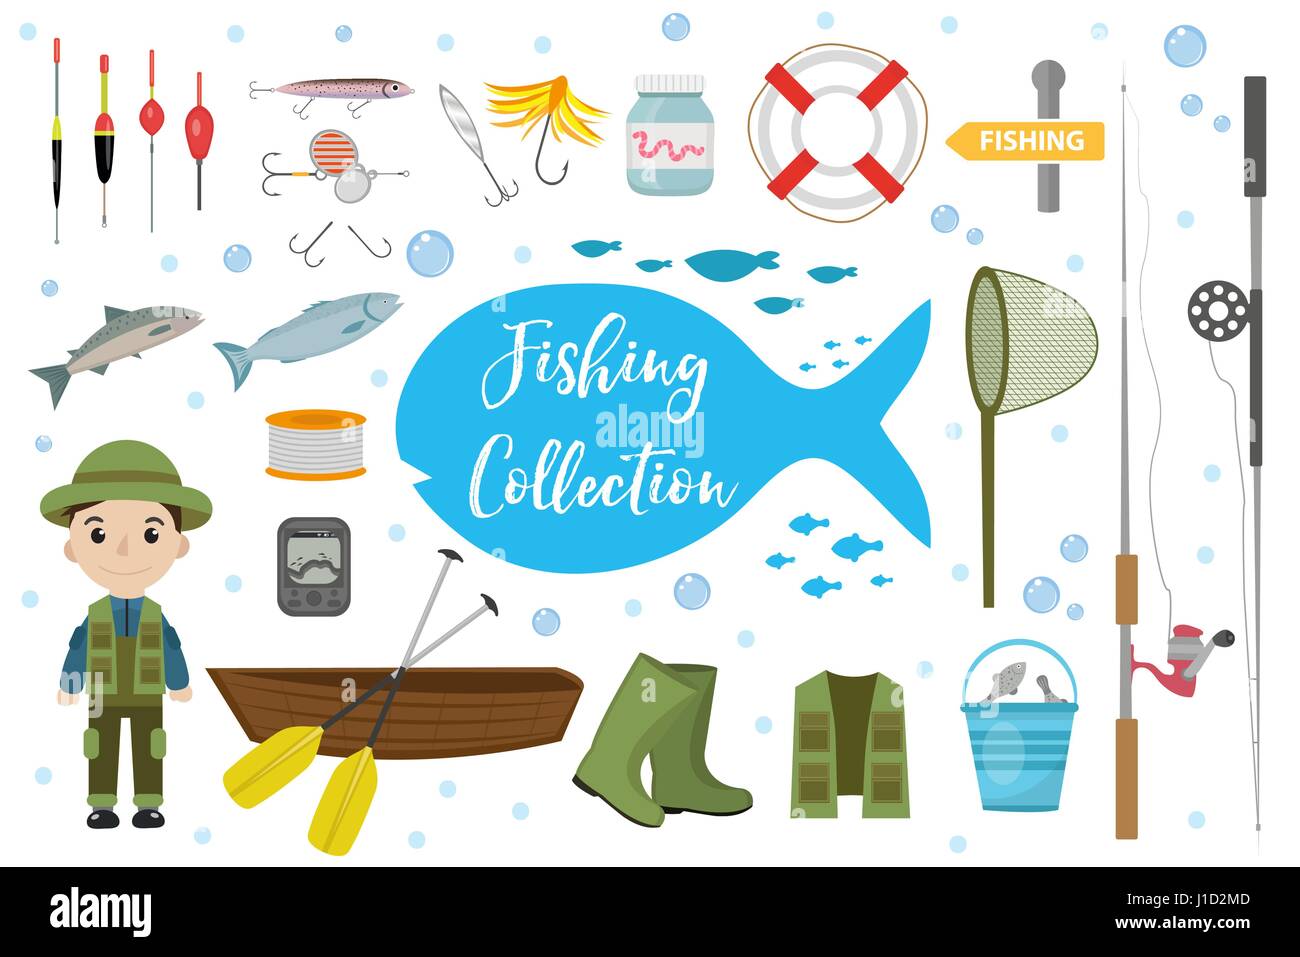 Conjunto de iconos de pesca, planas, estilo de dibujos animados. Objetos de  Colección de pesca, elementos de diseño aislado sobre fondo blanco.  Fisherman s herramientas con una caña de pescar, abordar, carnada